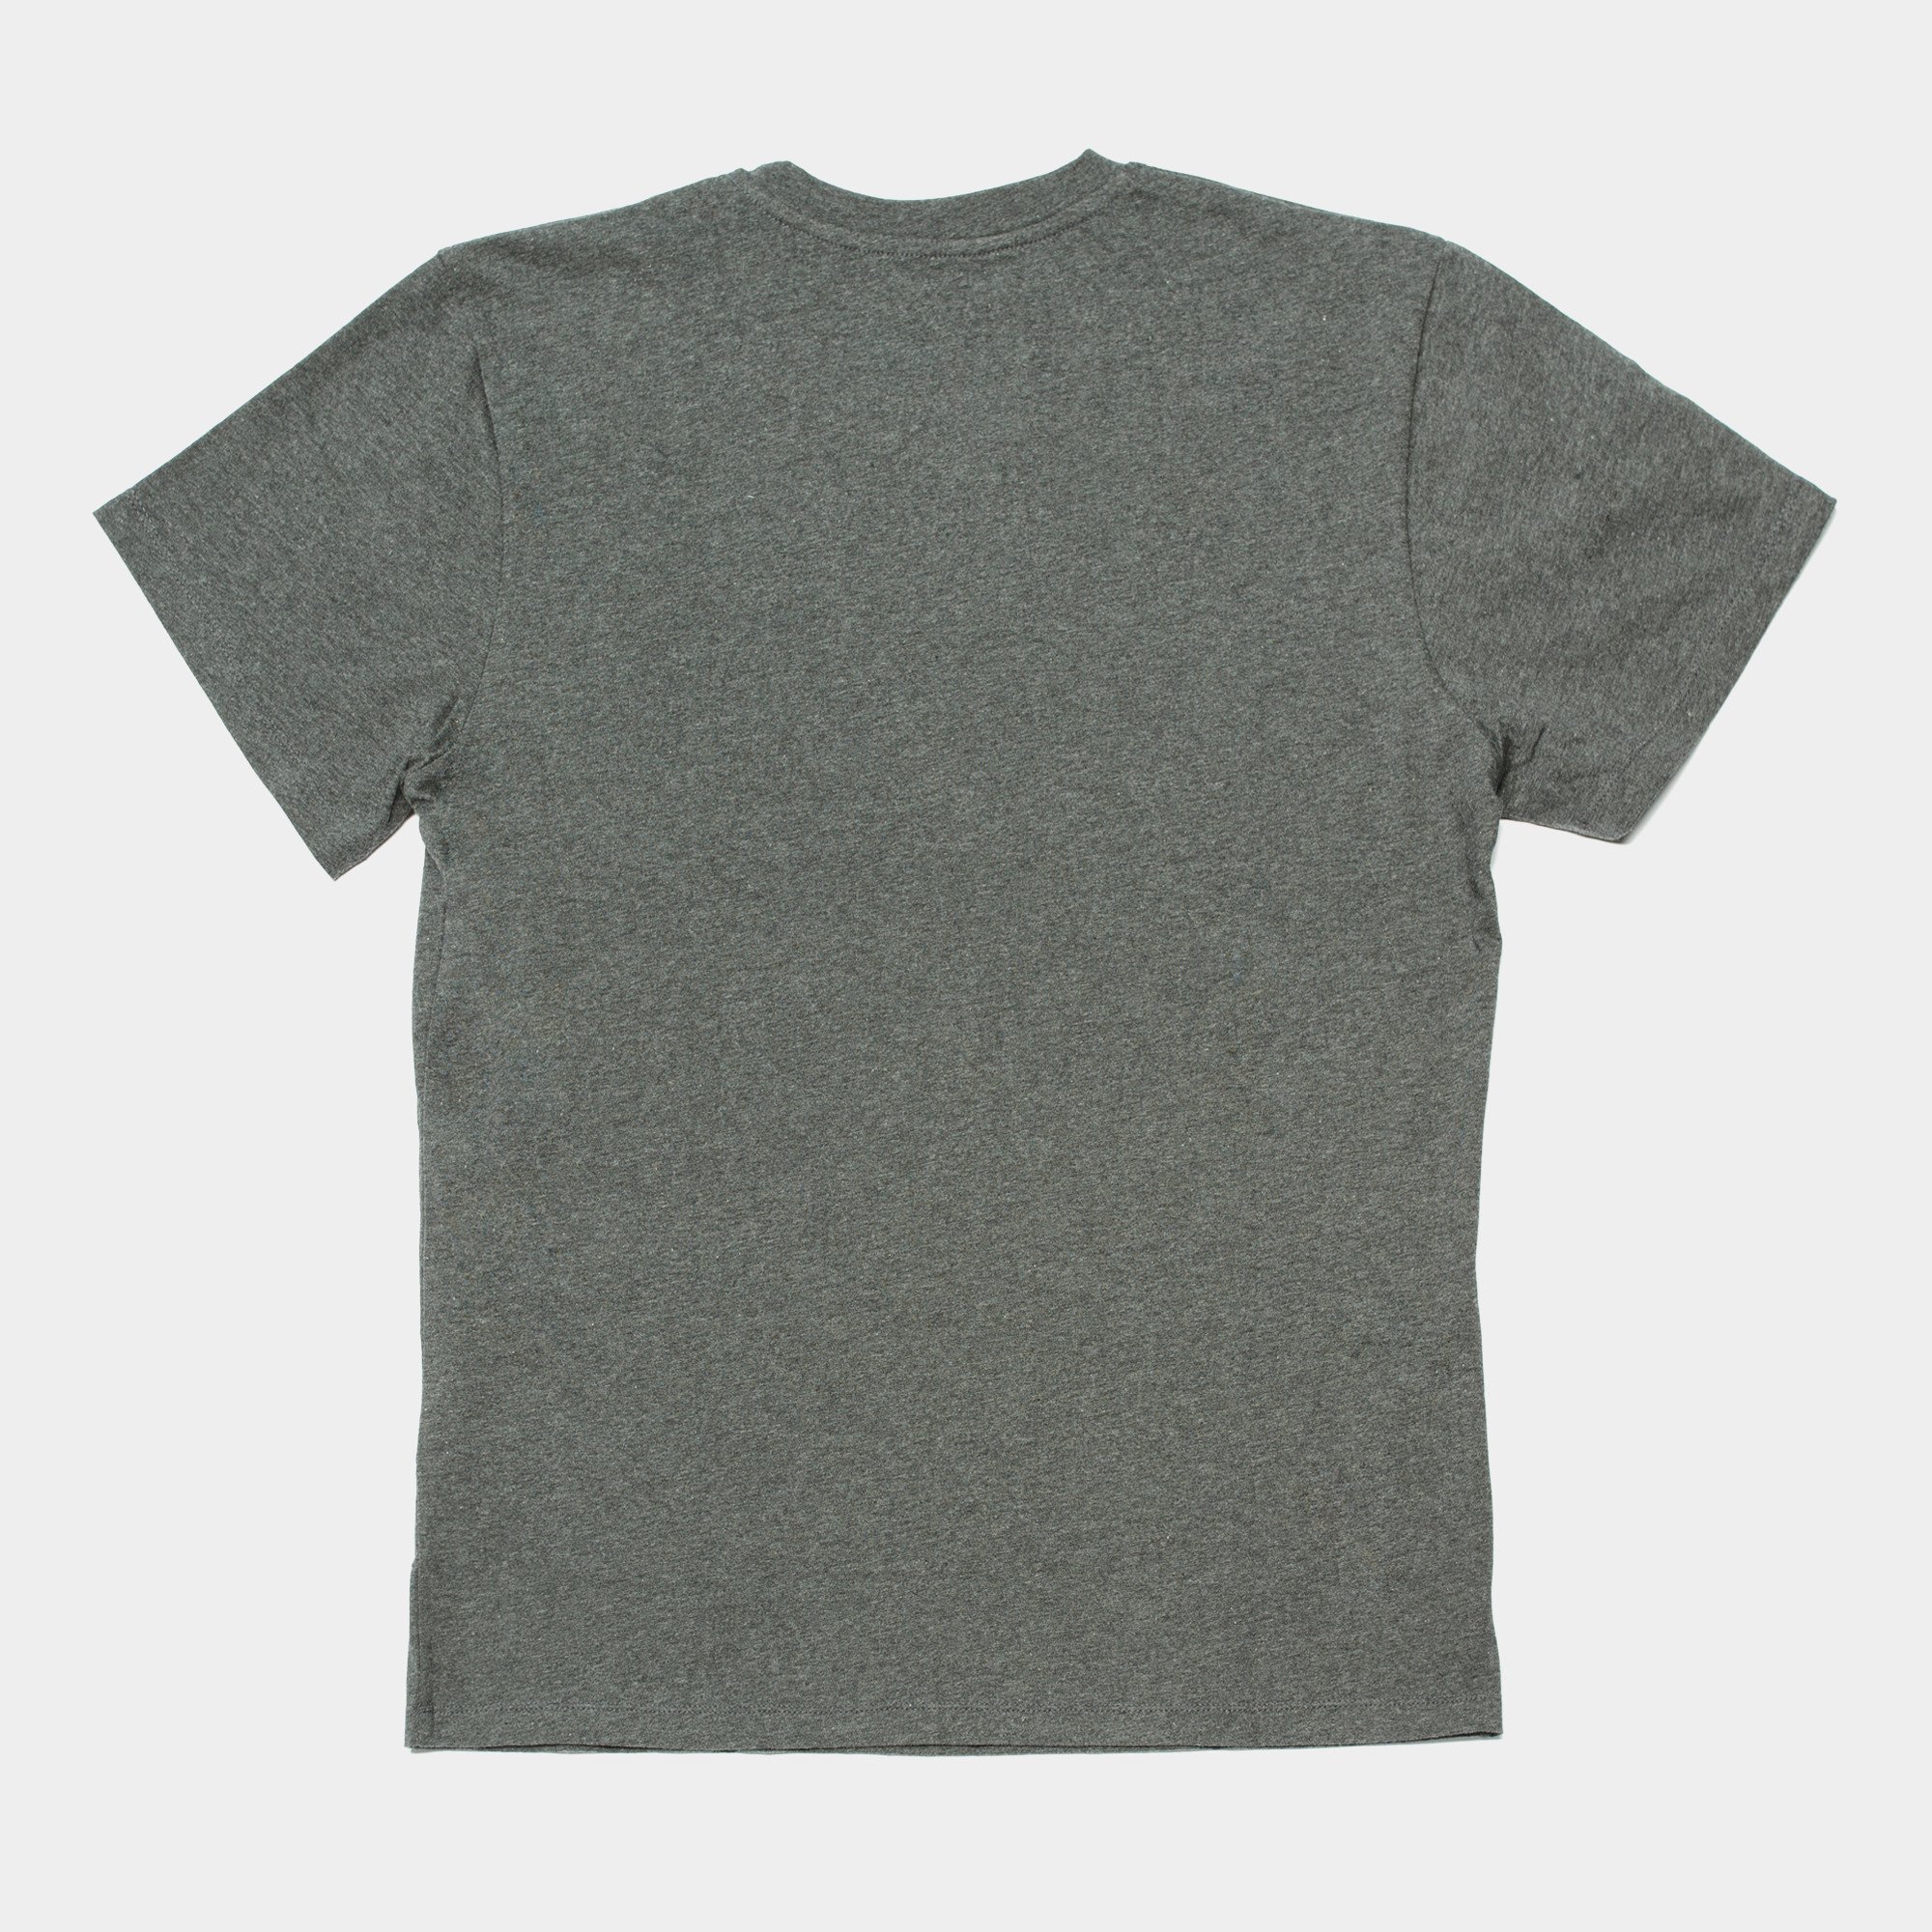 Awesome T-shirt Pattern Pocket - Asphalt / Magenta